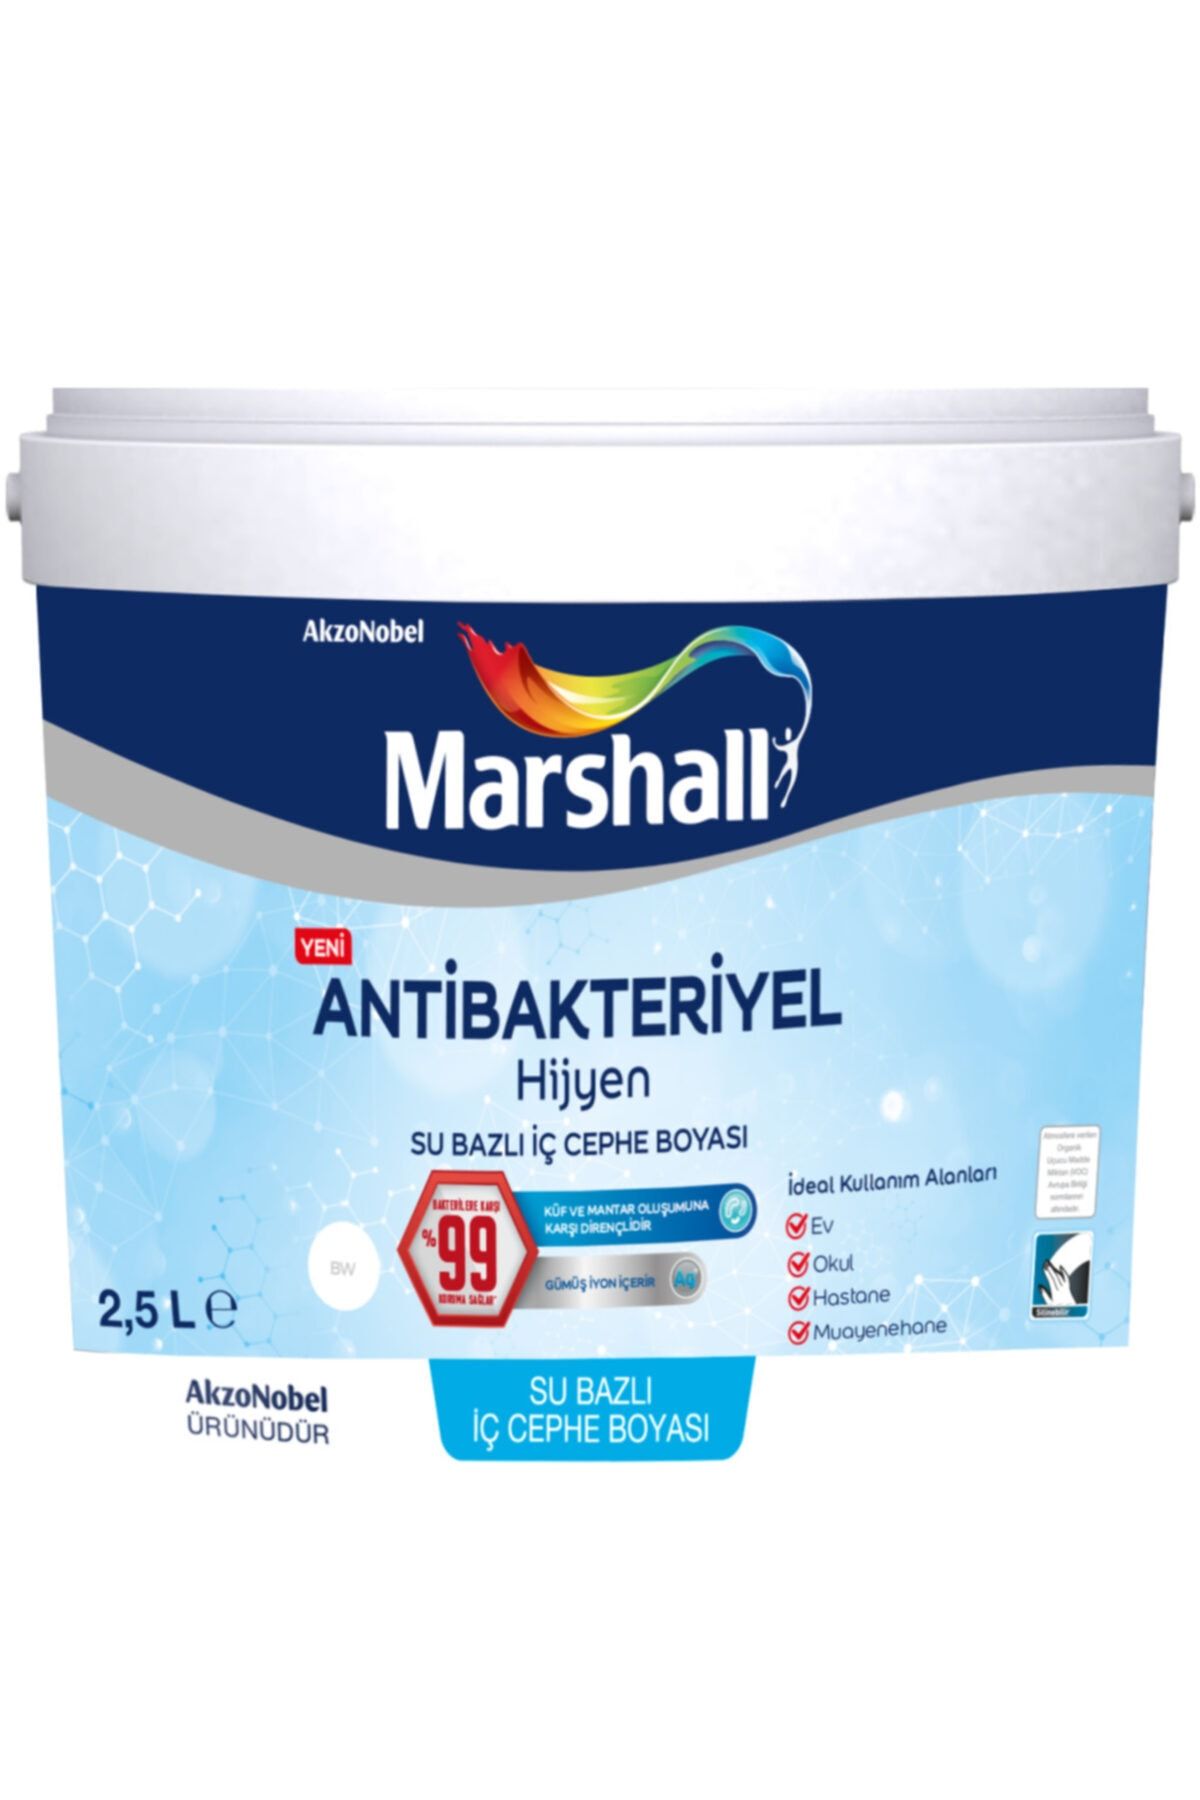 Marshall Antibakteriyel Hijyen Iç Cephe Duvar Boyası 2,5 Lt Damla Sakızı